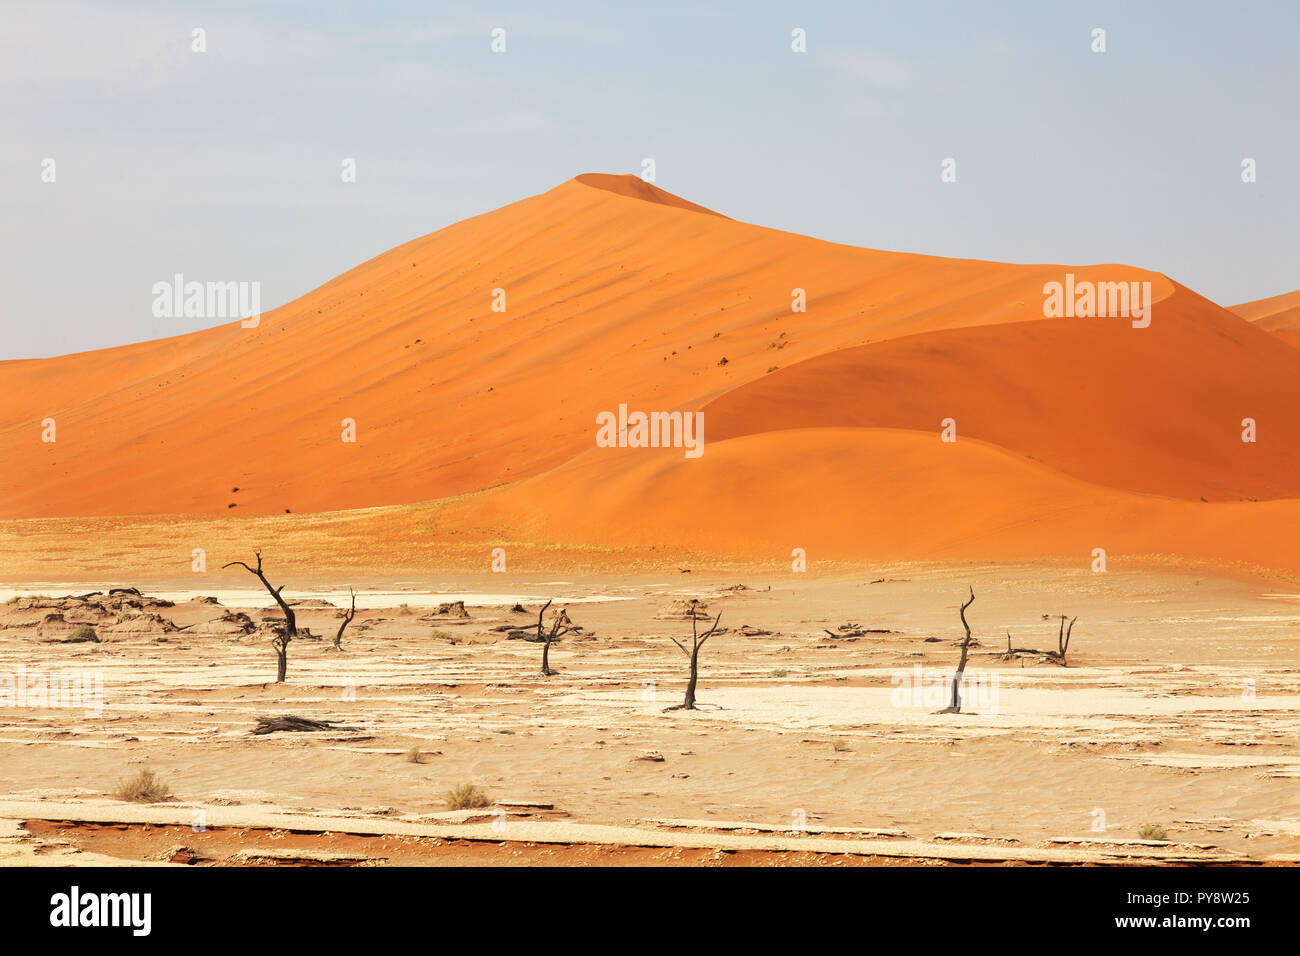 Namibia Desert - sand dunes at Sossusvlei, Namib Desert landscape , Namibia, Africa Stock Photo